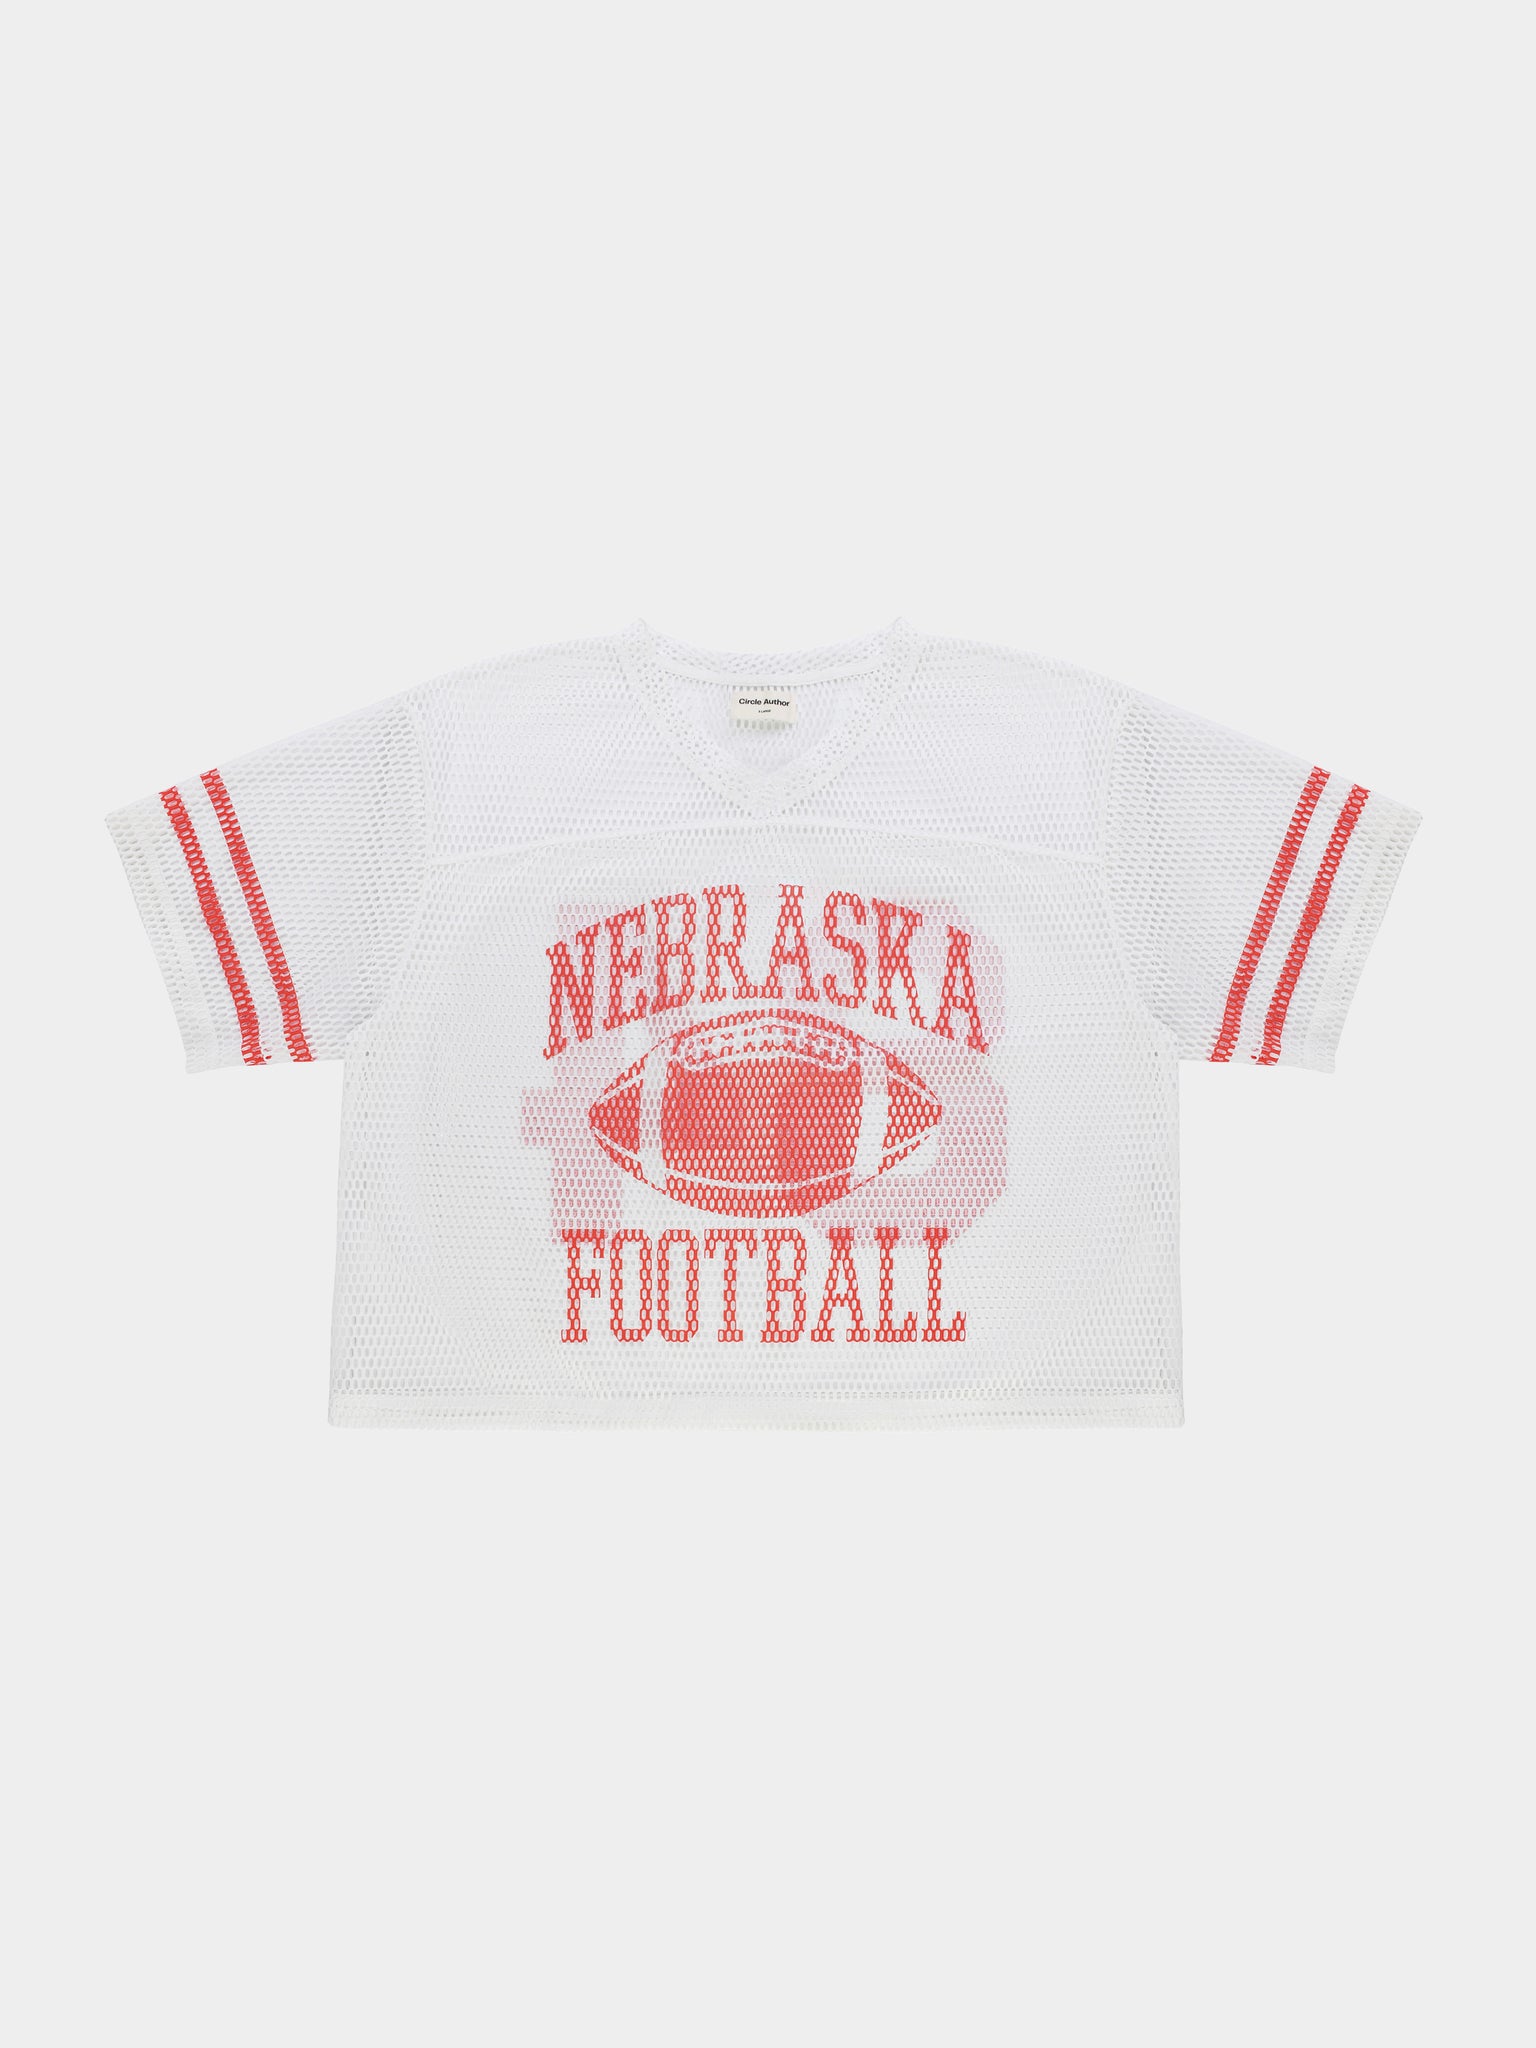 Nebraska Football Jersey